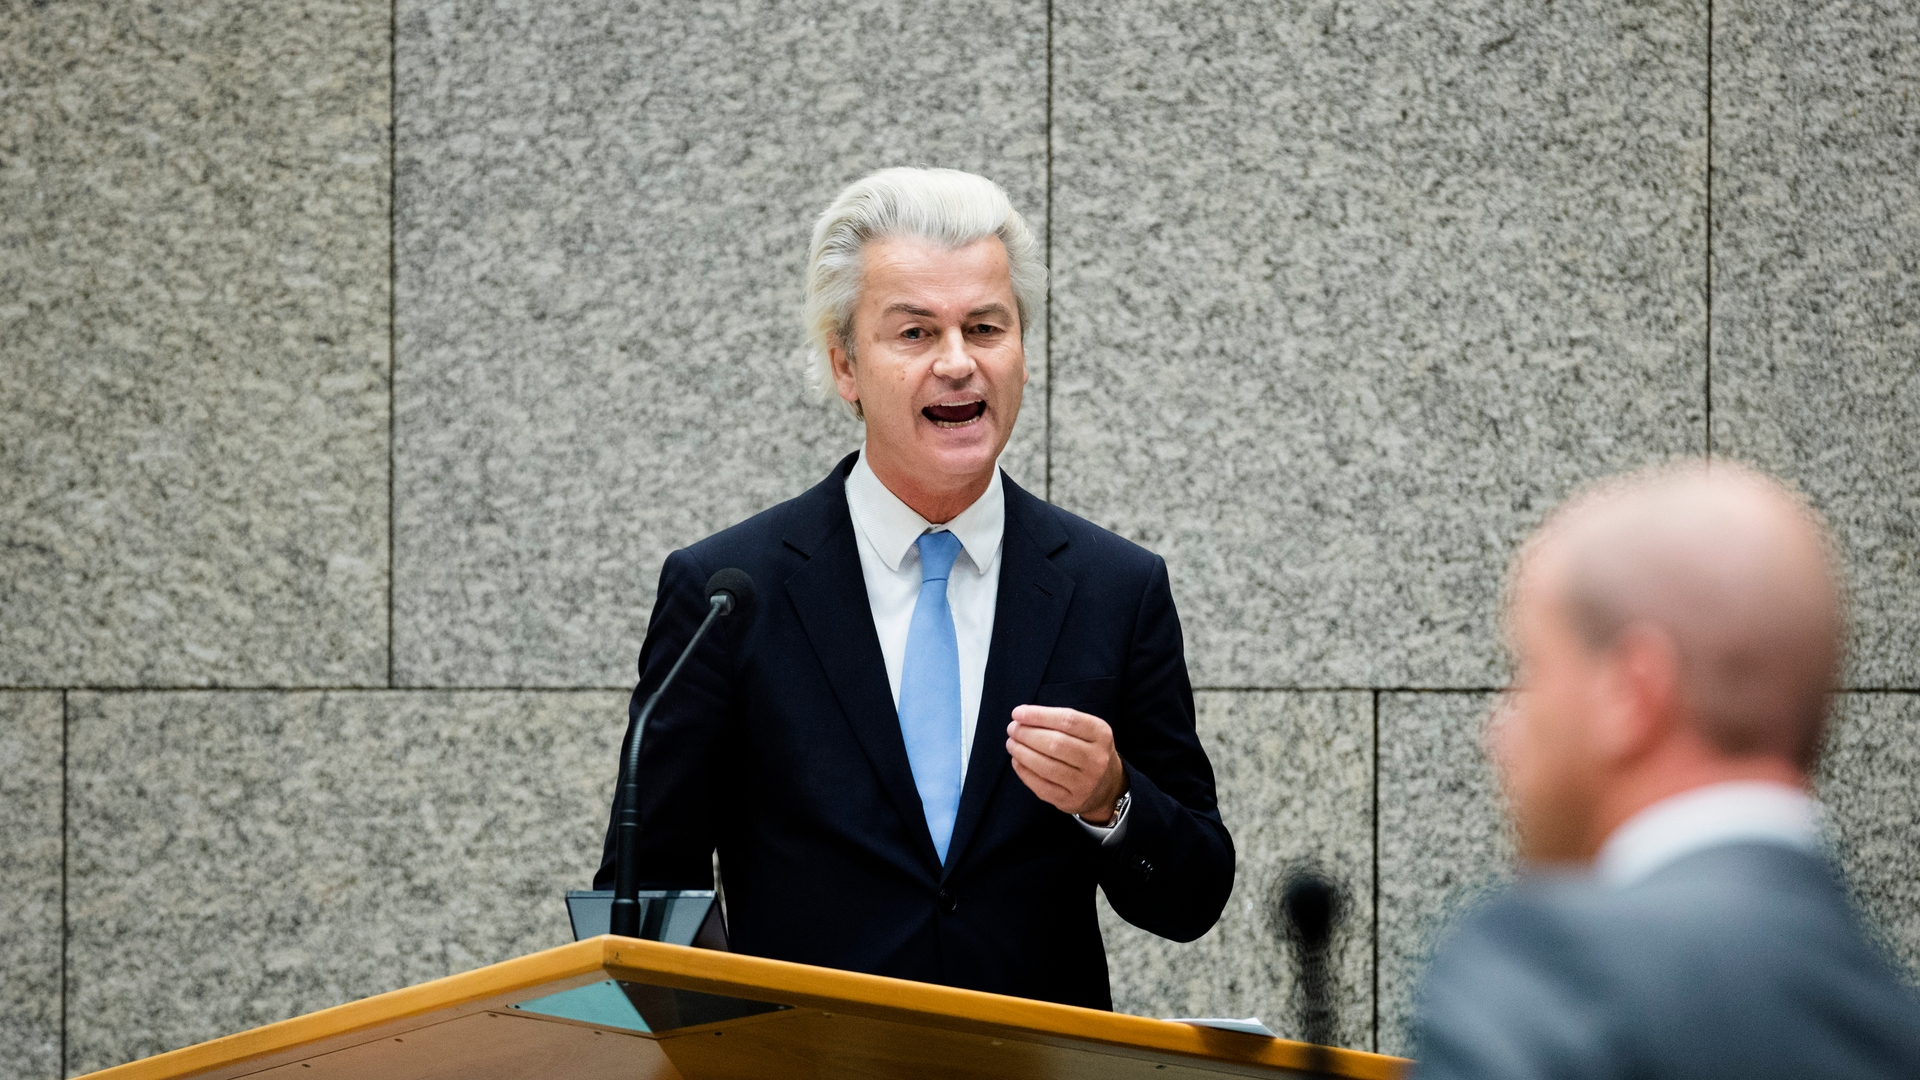 Kamer debatteert met Rutte over vluchtelingen